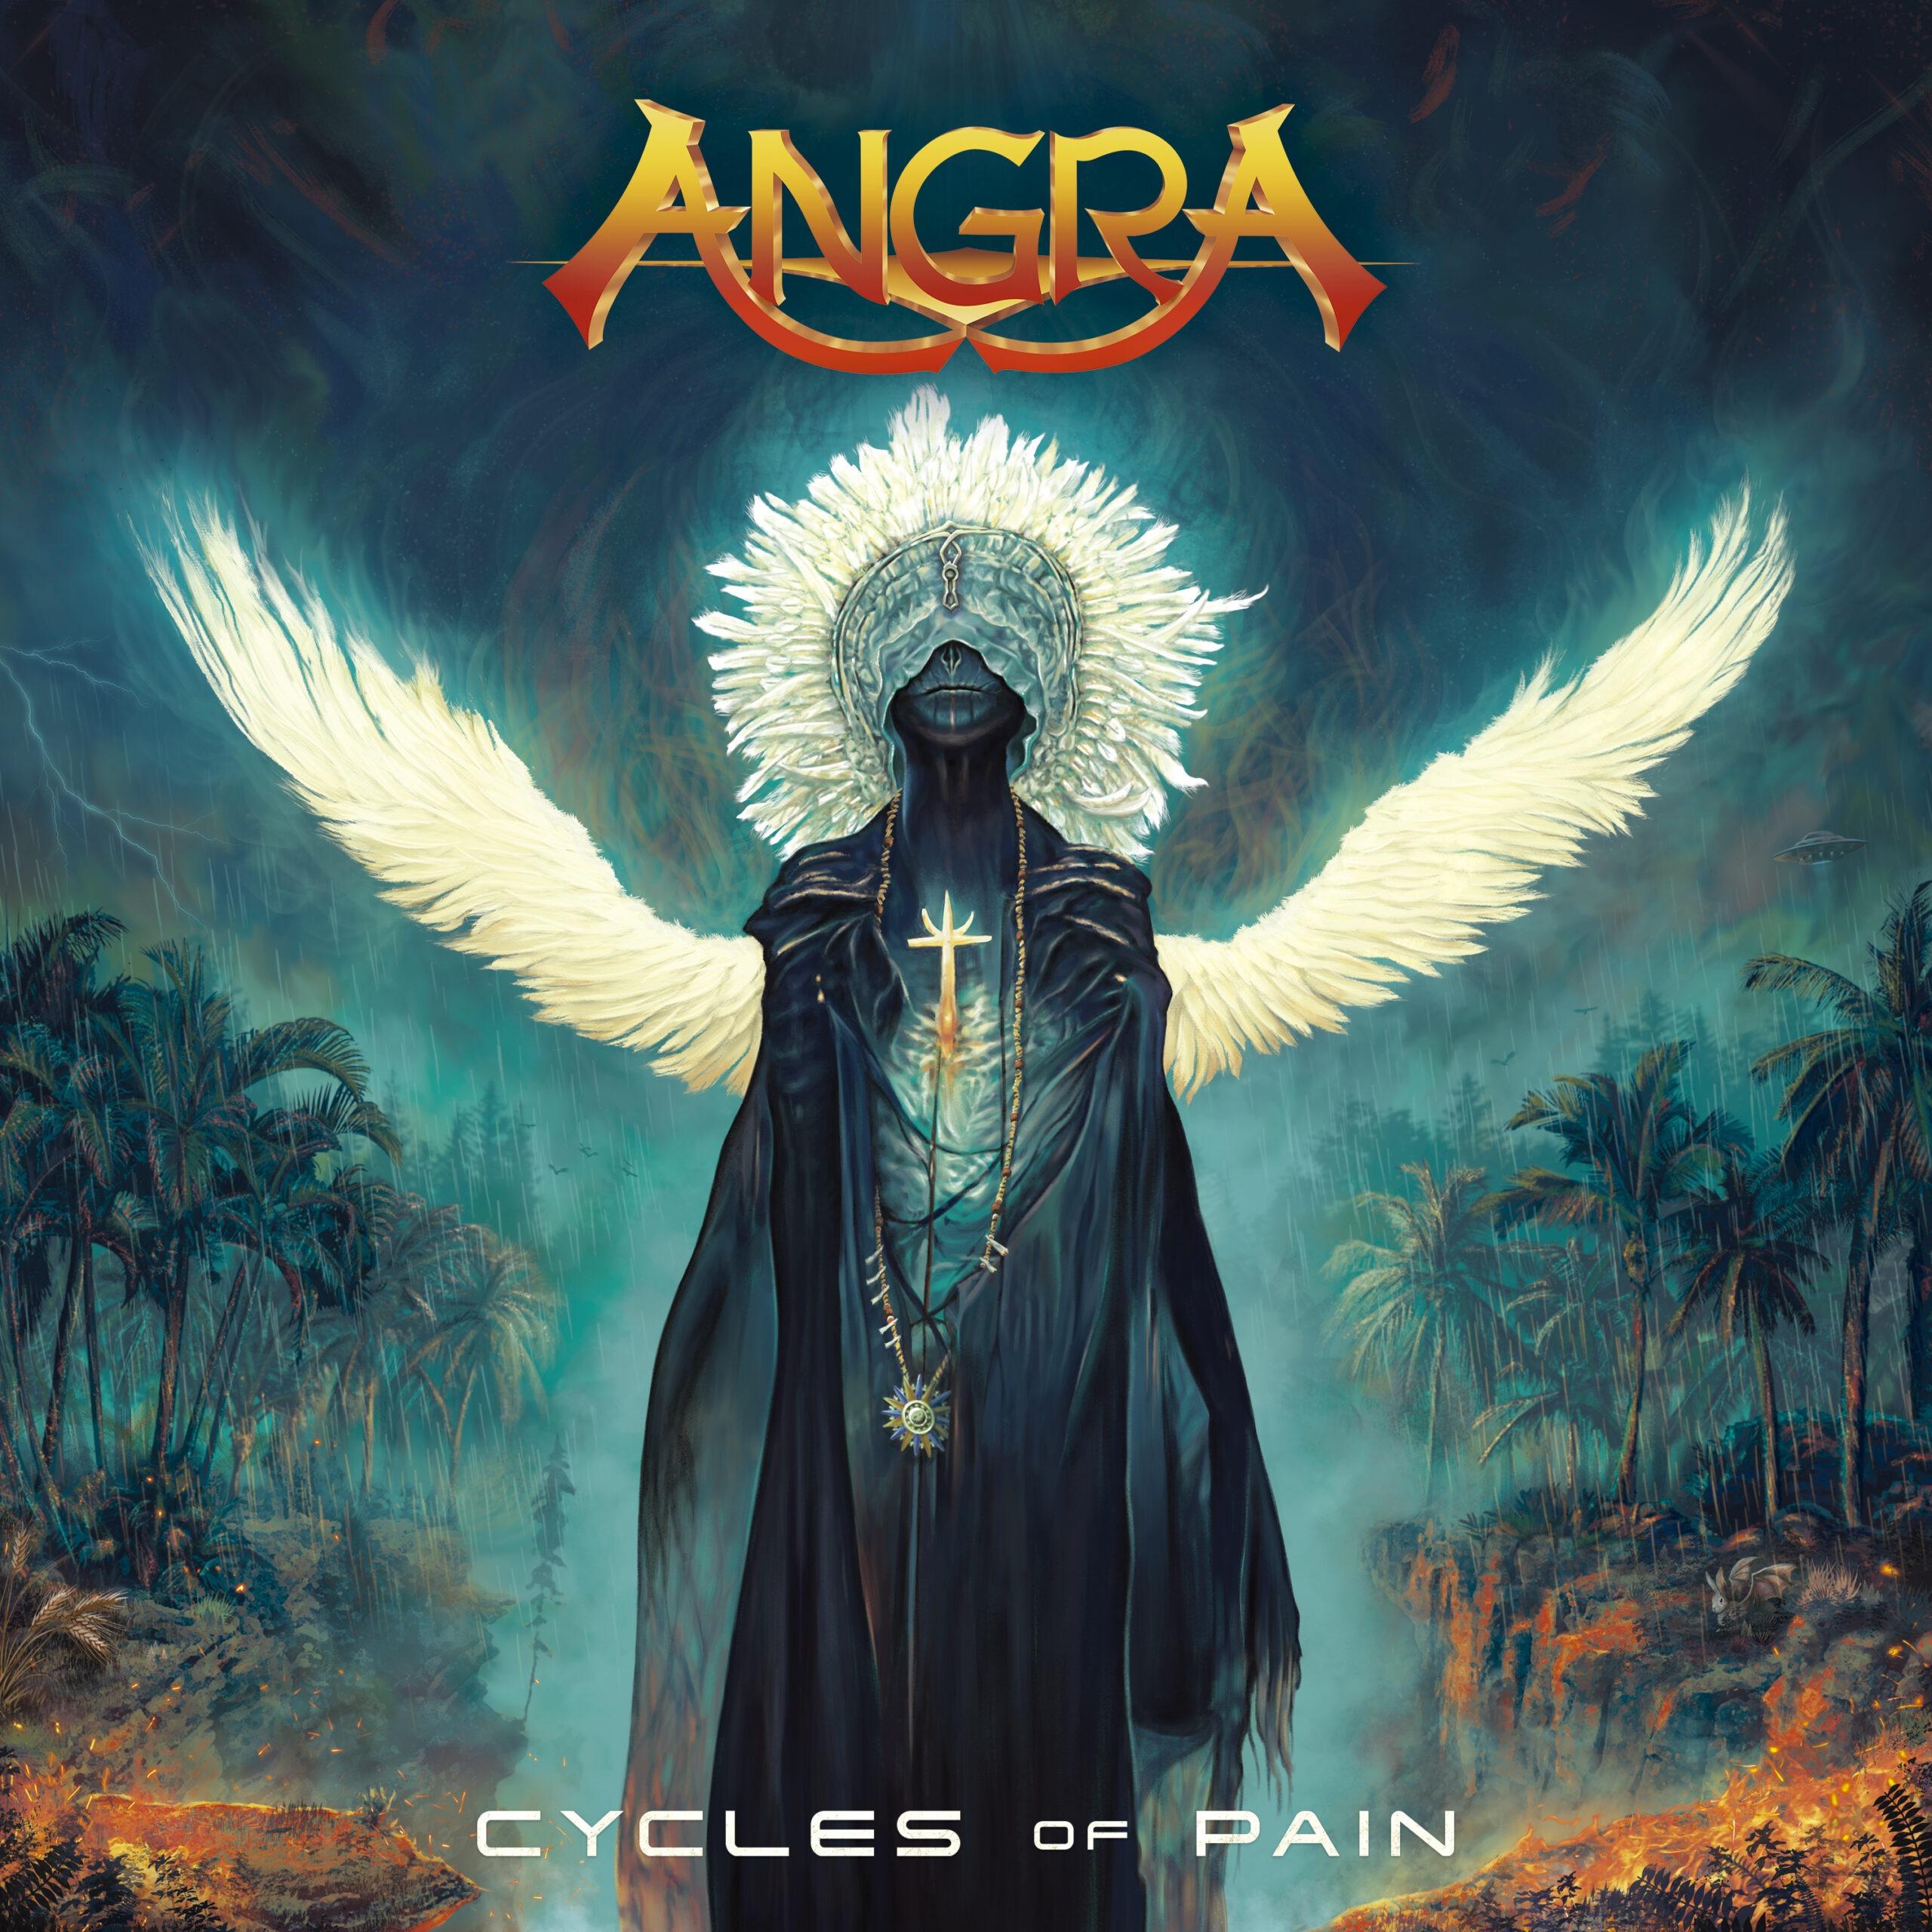 Novo Álbum “Cycles Of Pain” do ANGRA Promete Elevar o Heavy Metal Brasileiro a Novos Patamares